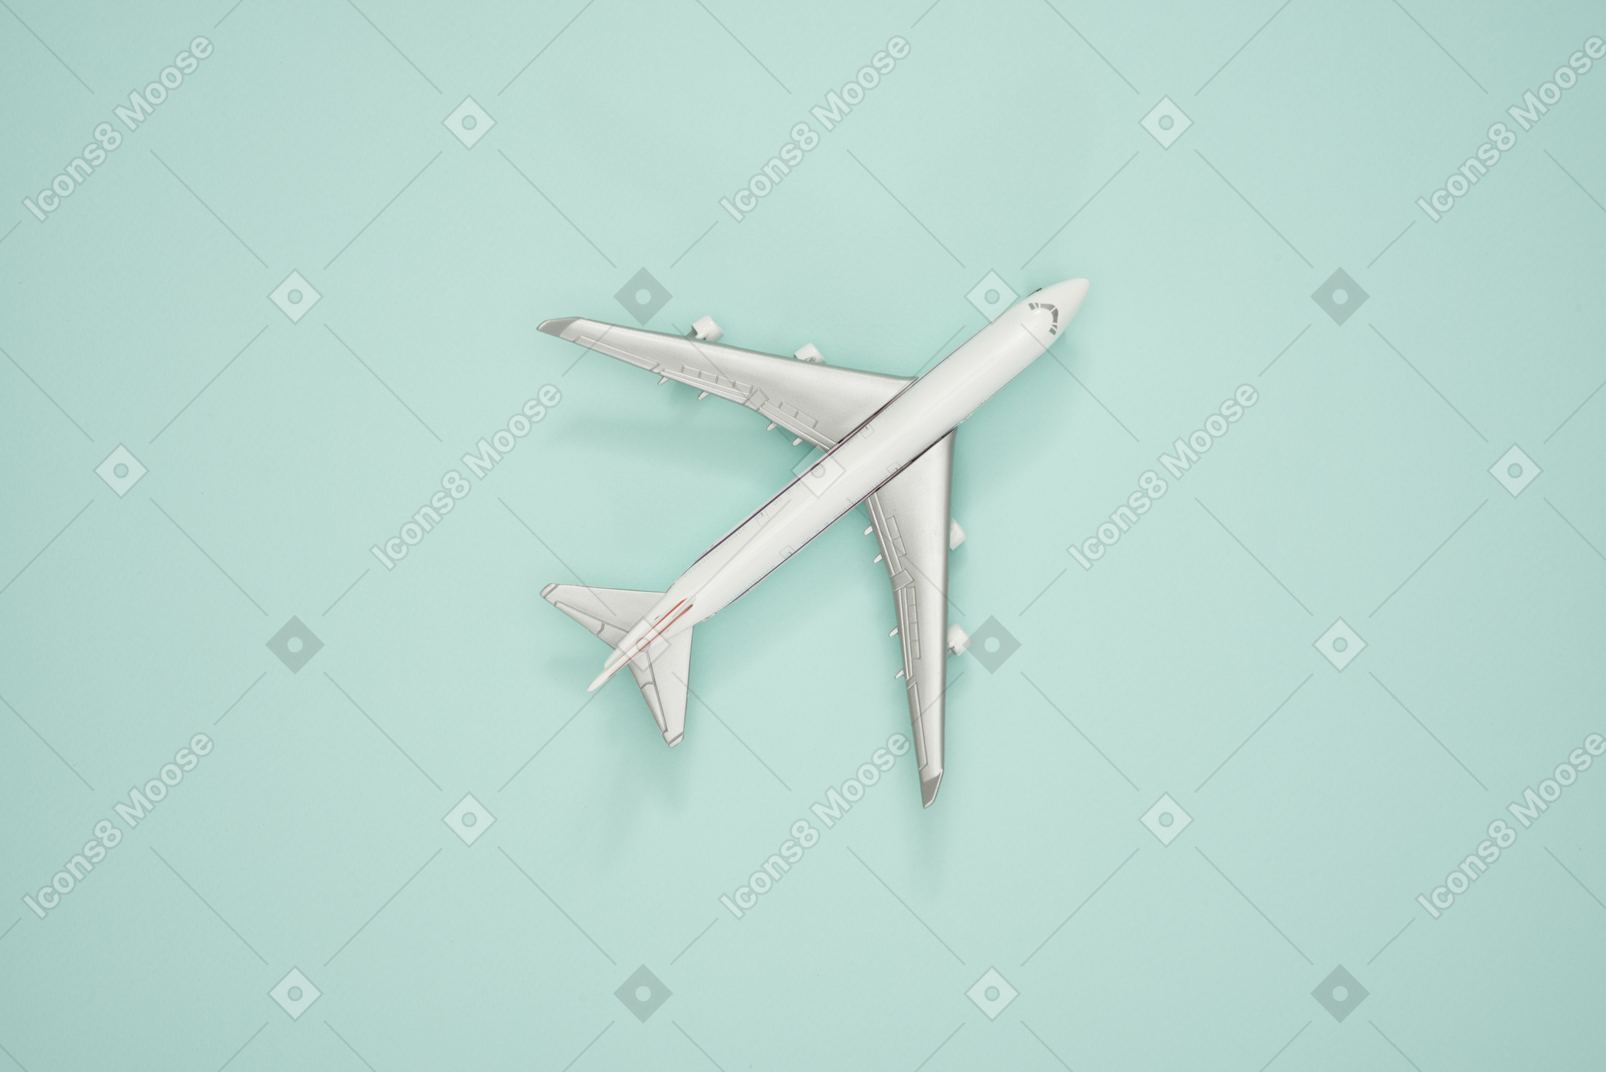 Maquette d'avion sur un fond turquoise